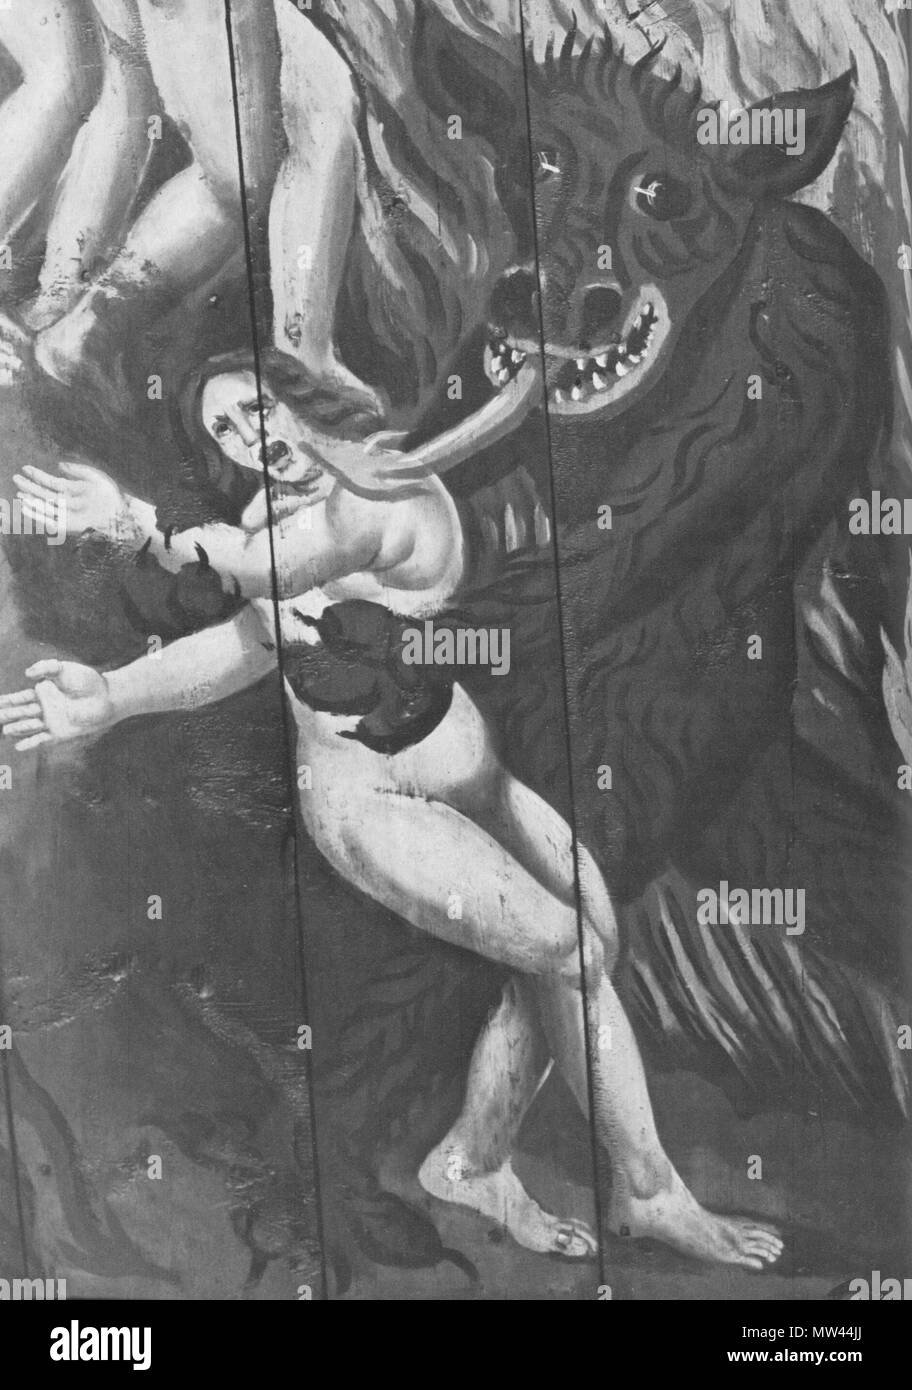 . Englisch: Der Teufel fängt eine Frau. Detail der Wandmalerei in der Kirche von Trosa, Schweden. Mittelalter.. Unbekannt 161 Teufel nimmt Frau Stockfoto